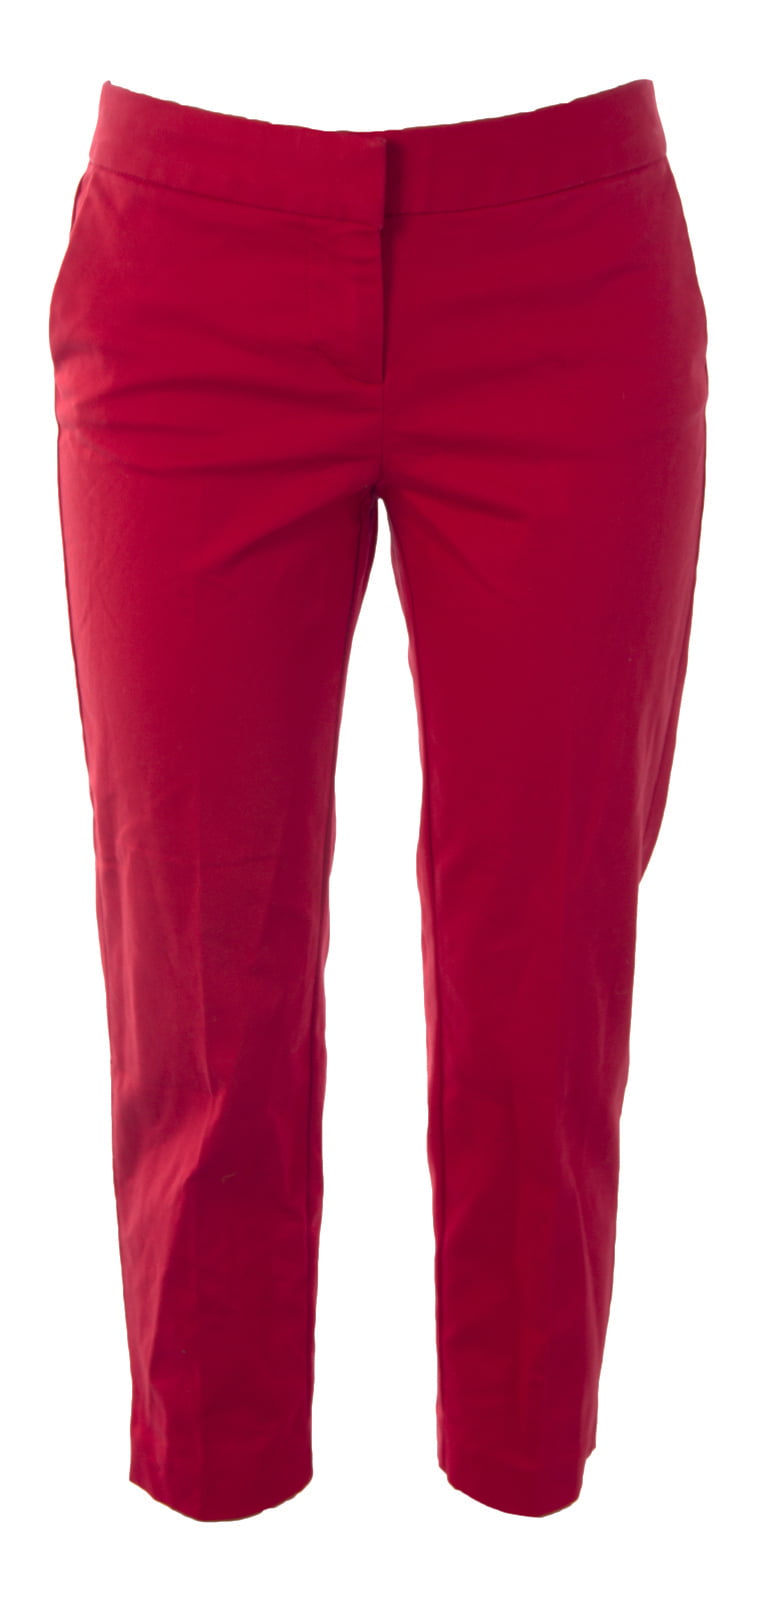 BODEN Women's Bistro Crop Trousers US Sz 2R Venetian Red - Walmart.com